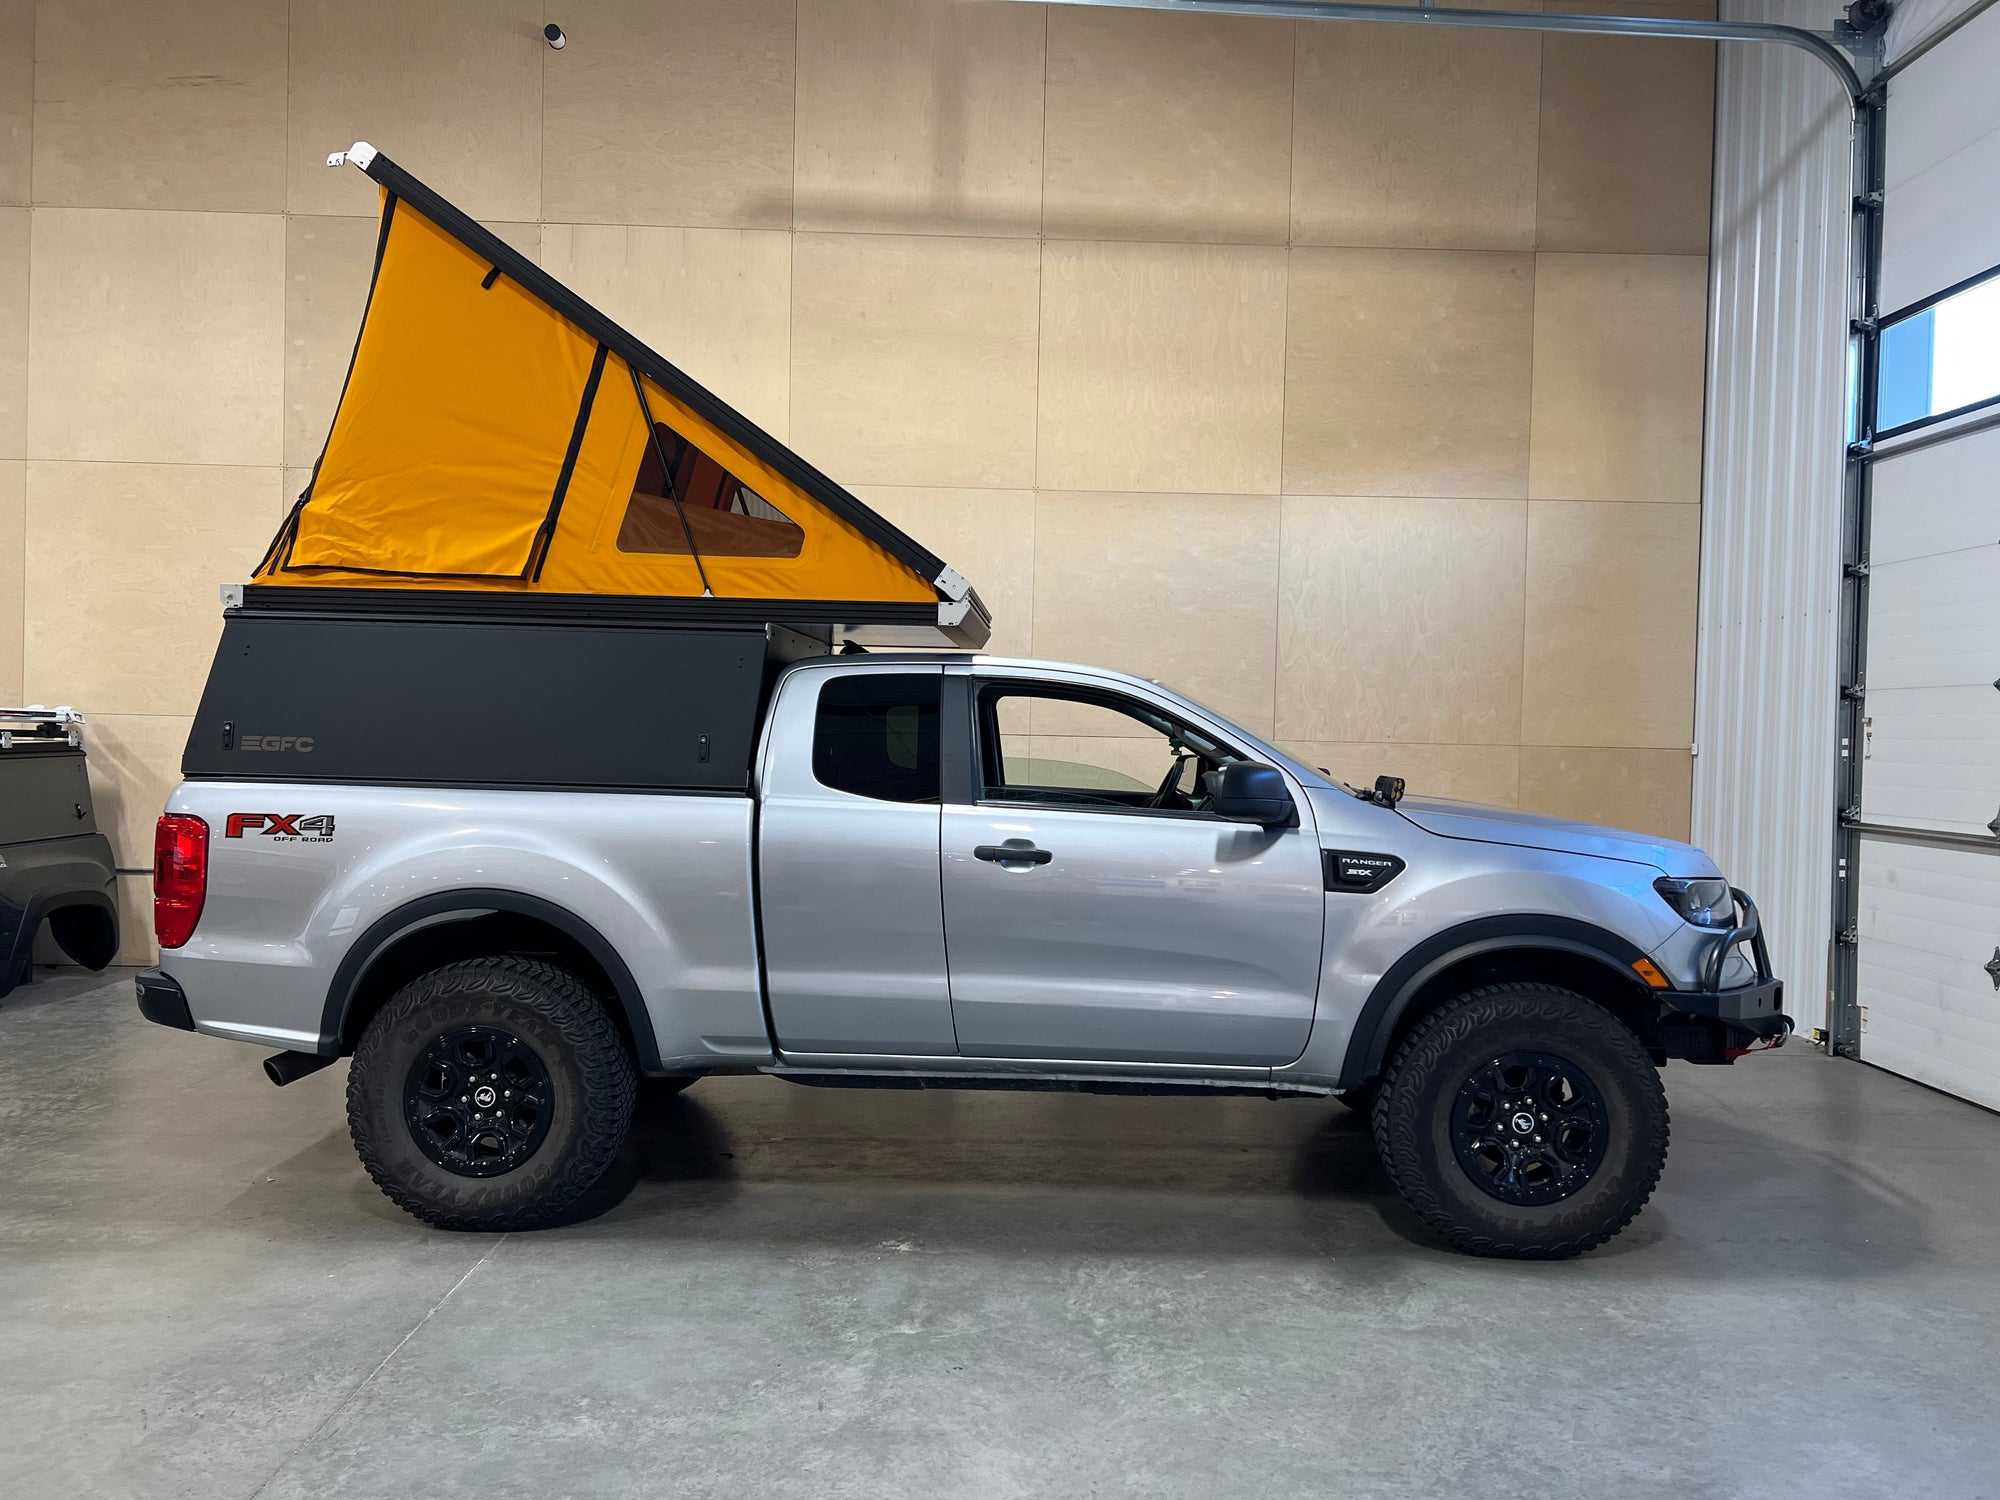 2019 Ford Ranger Camper - Build #5273